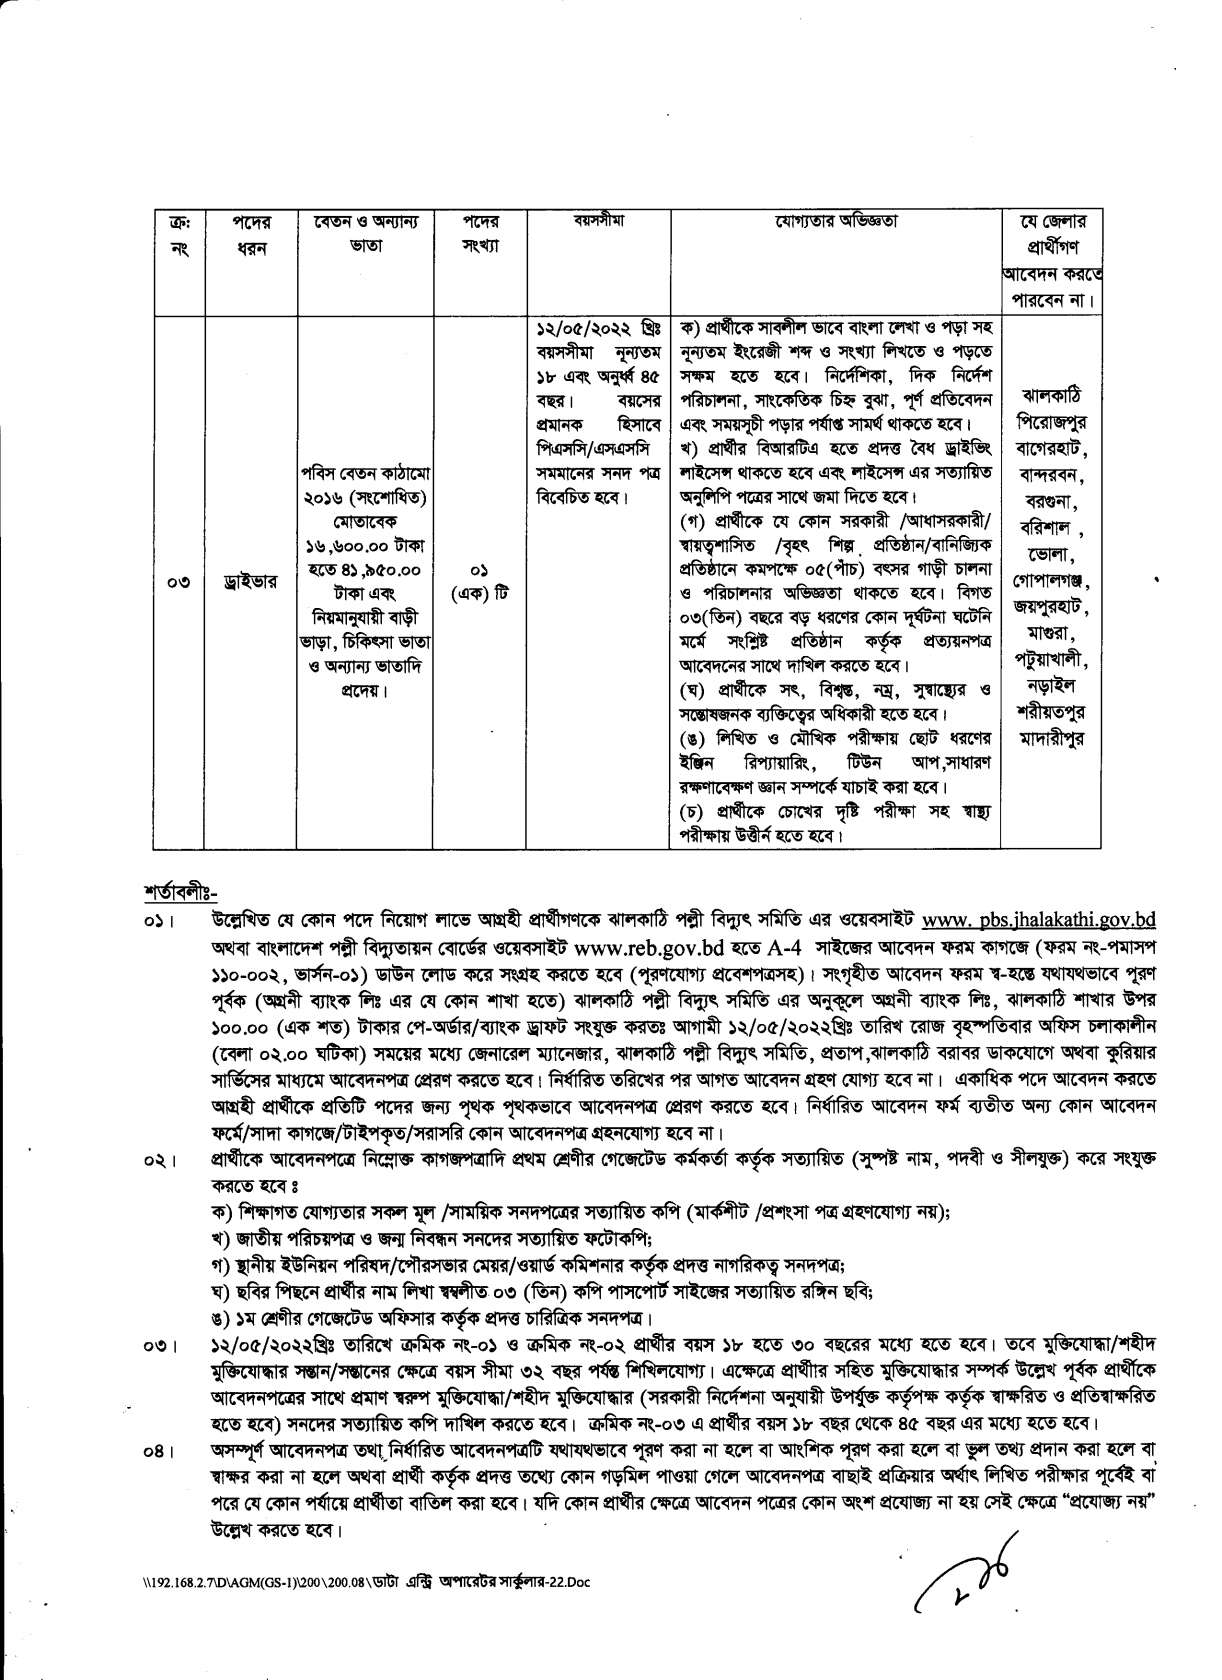 ঝালকাঠি পল্লী বিদ্যুৎ সমিতি নিয়োগ বিজ্ঞপ্তি ২০২২ | Jhalokati Palli Bidyut Samiti Job Circular 2022